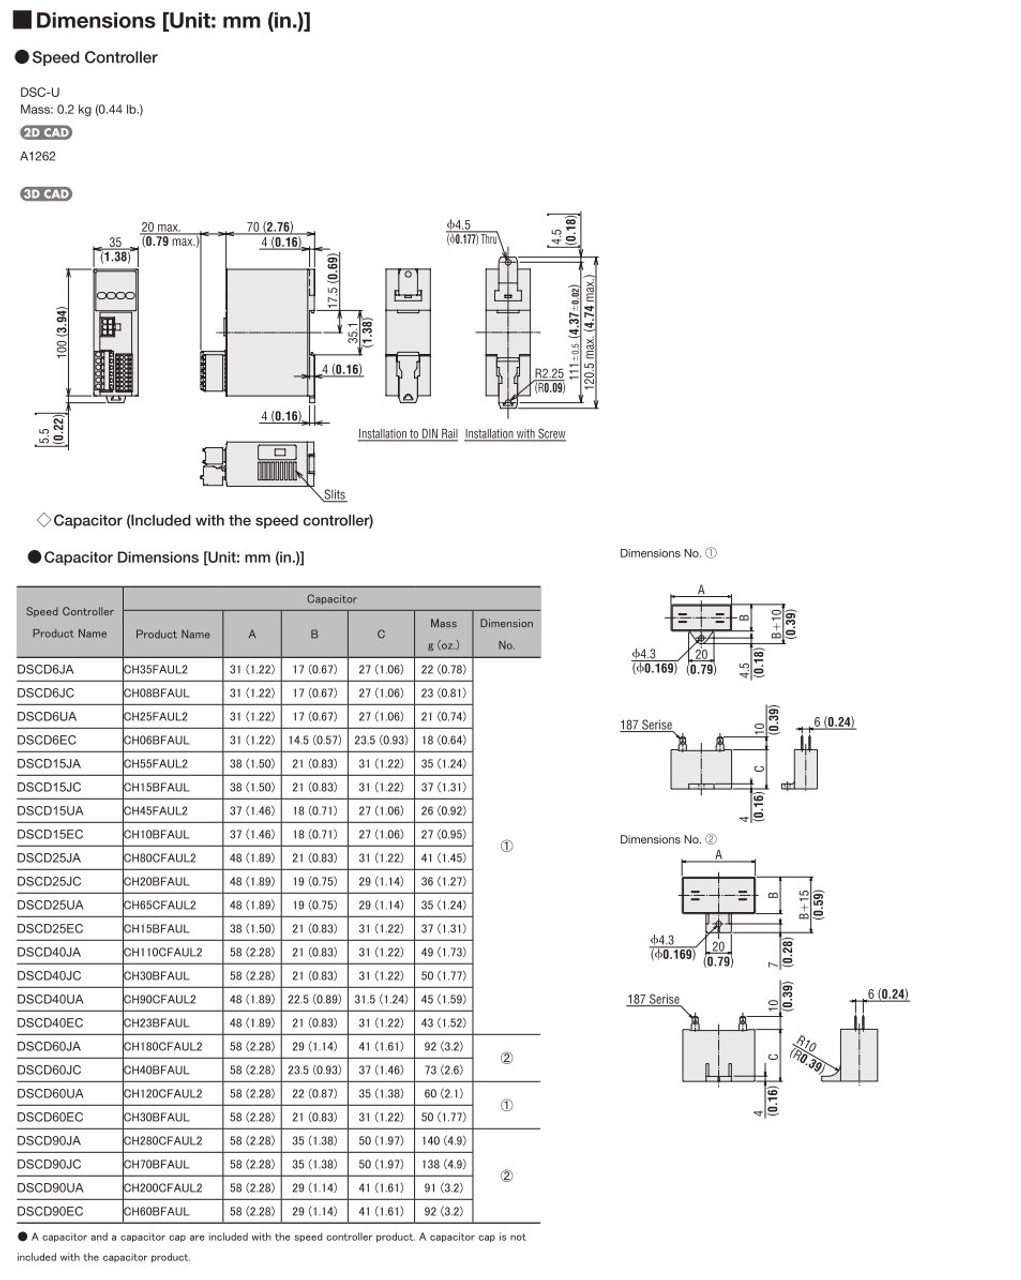 SCM315EC-250A / DSCD15EC - Dimensions